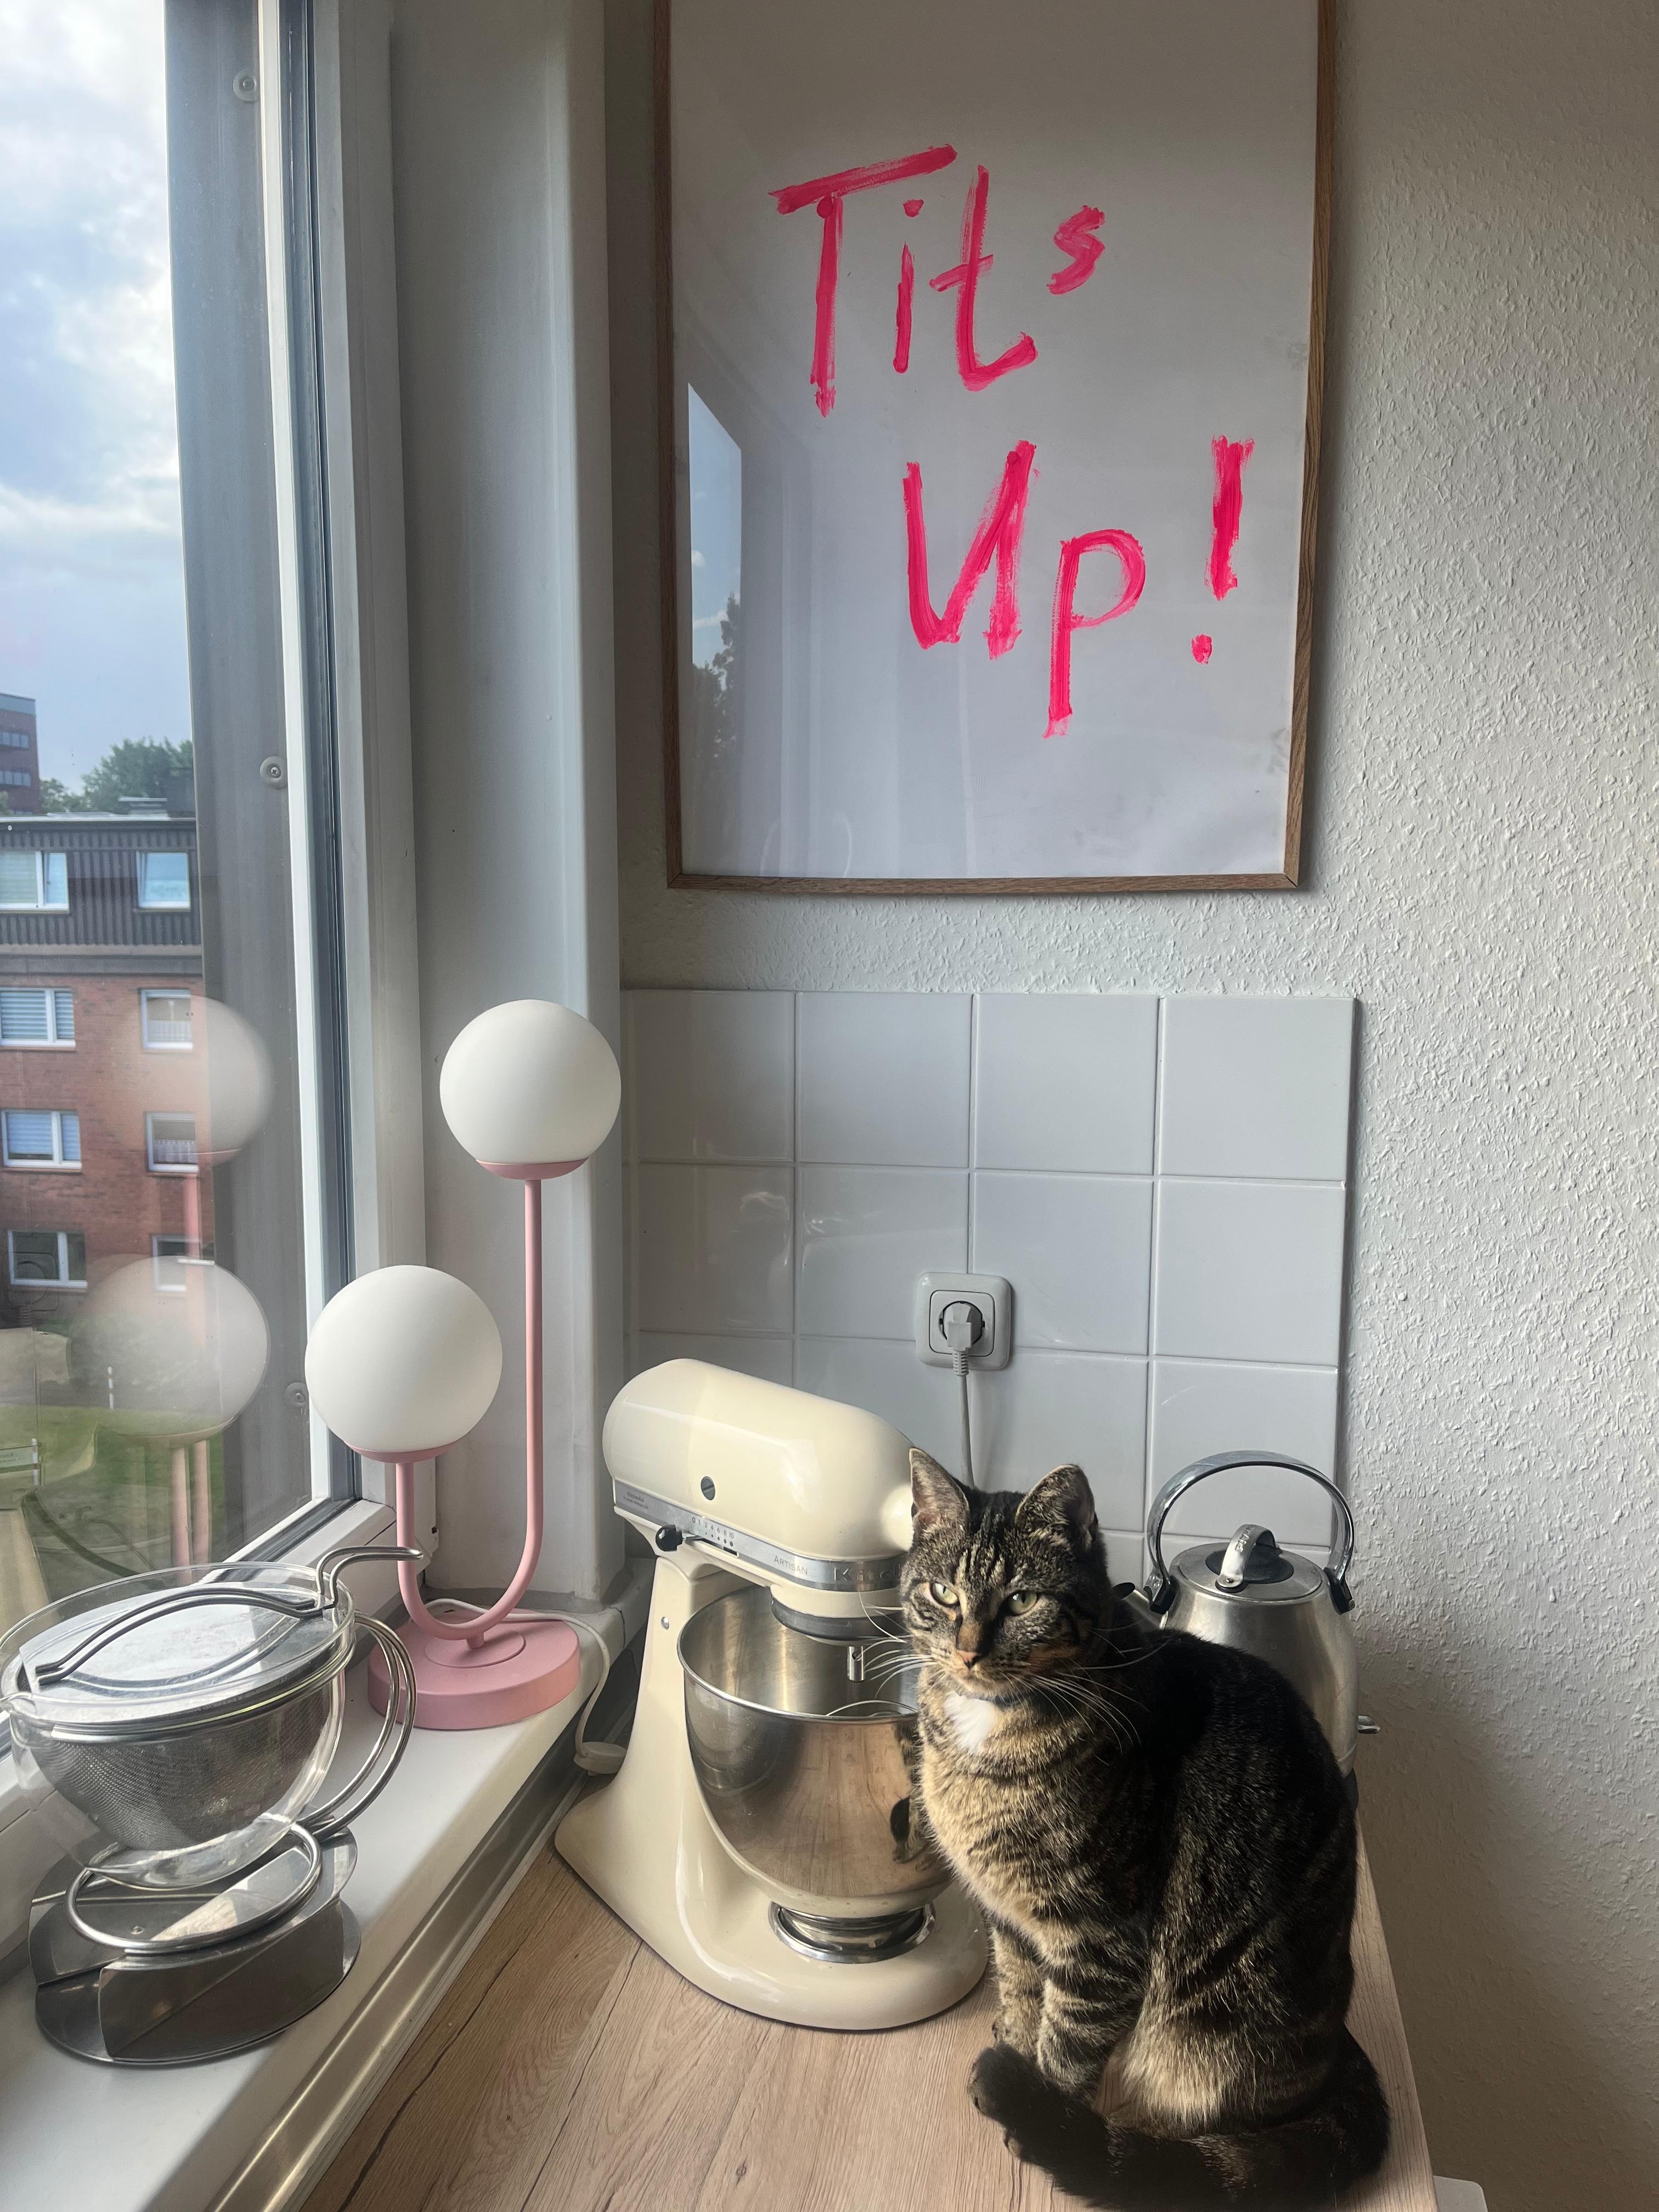 Küchenstorys 

Die Katze ist immer dabei ☺️
#poster #küche #neon #art #katze